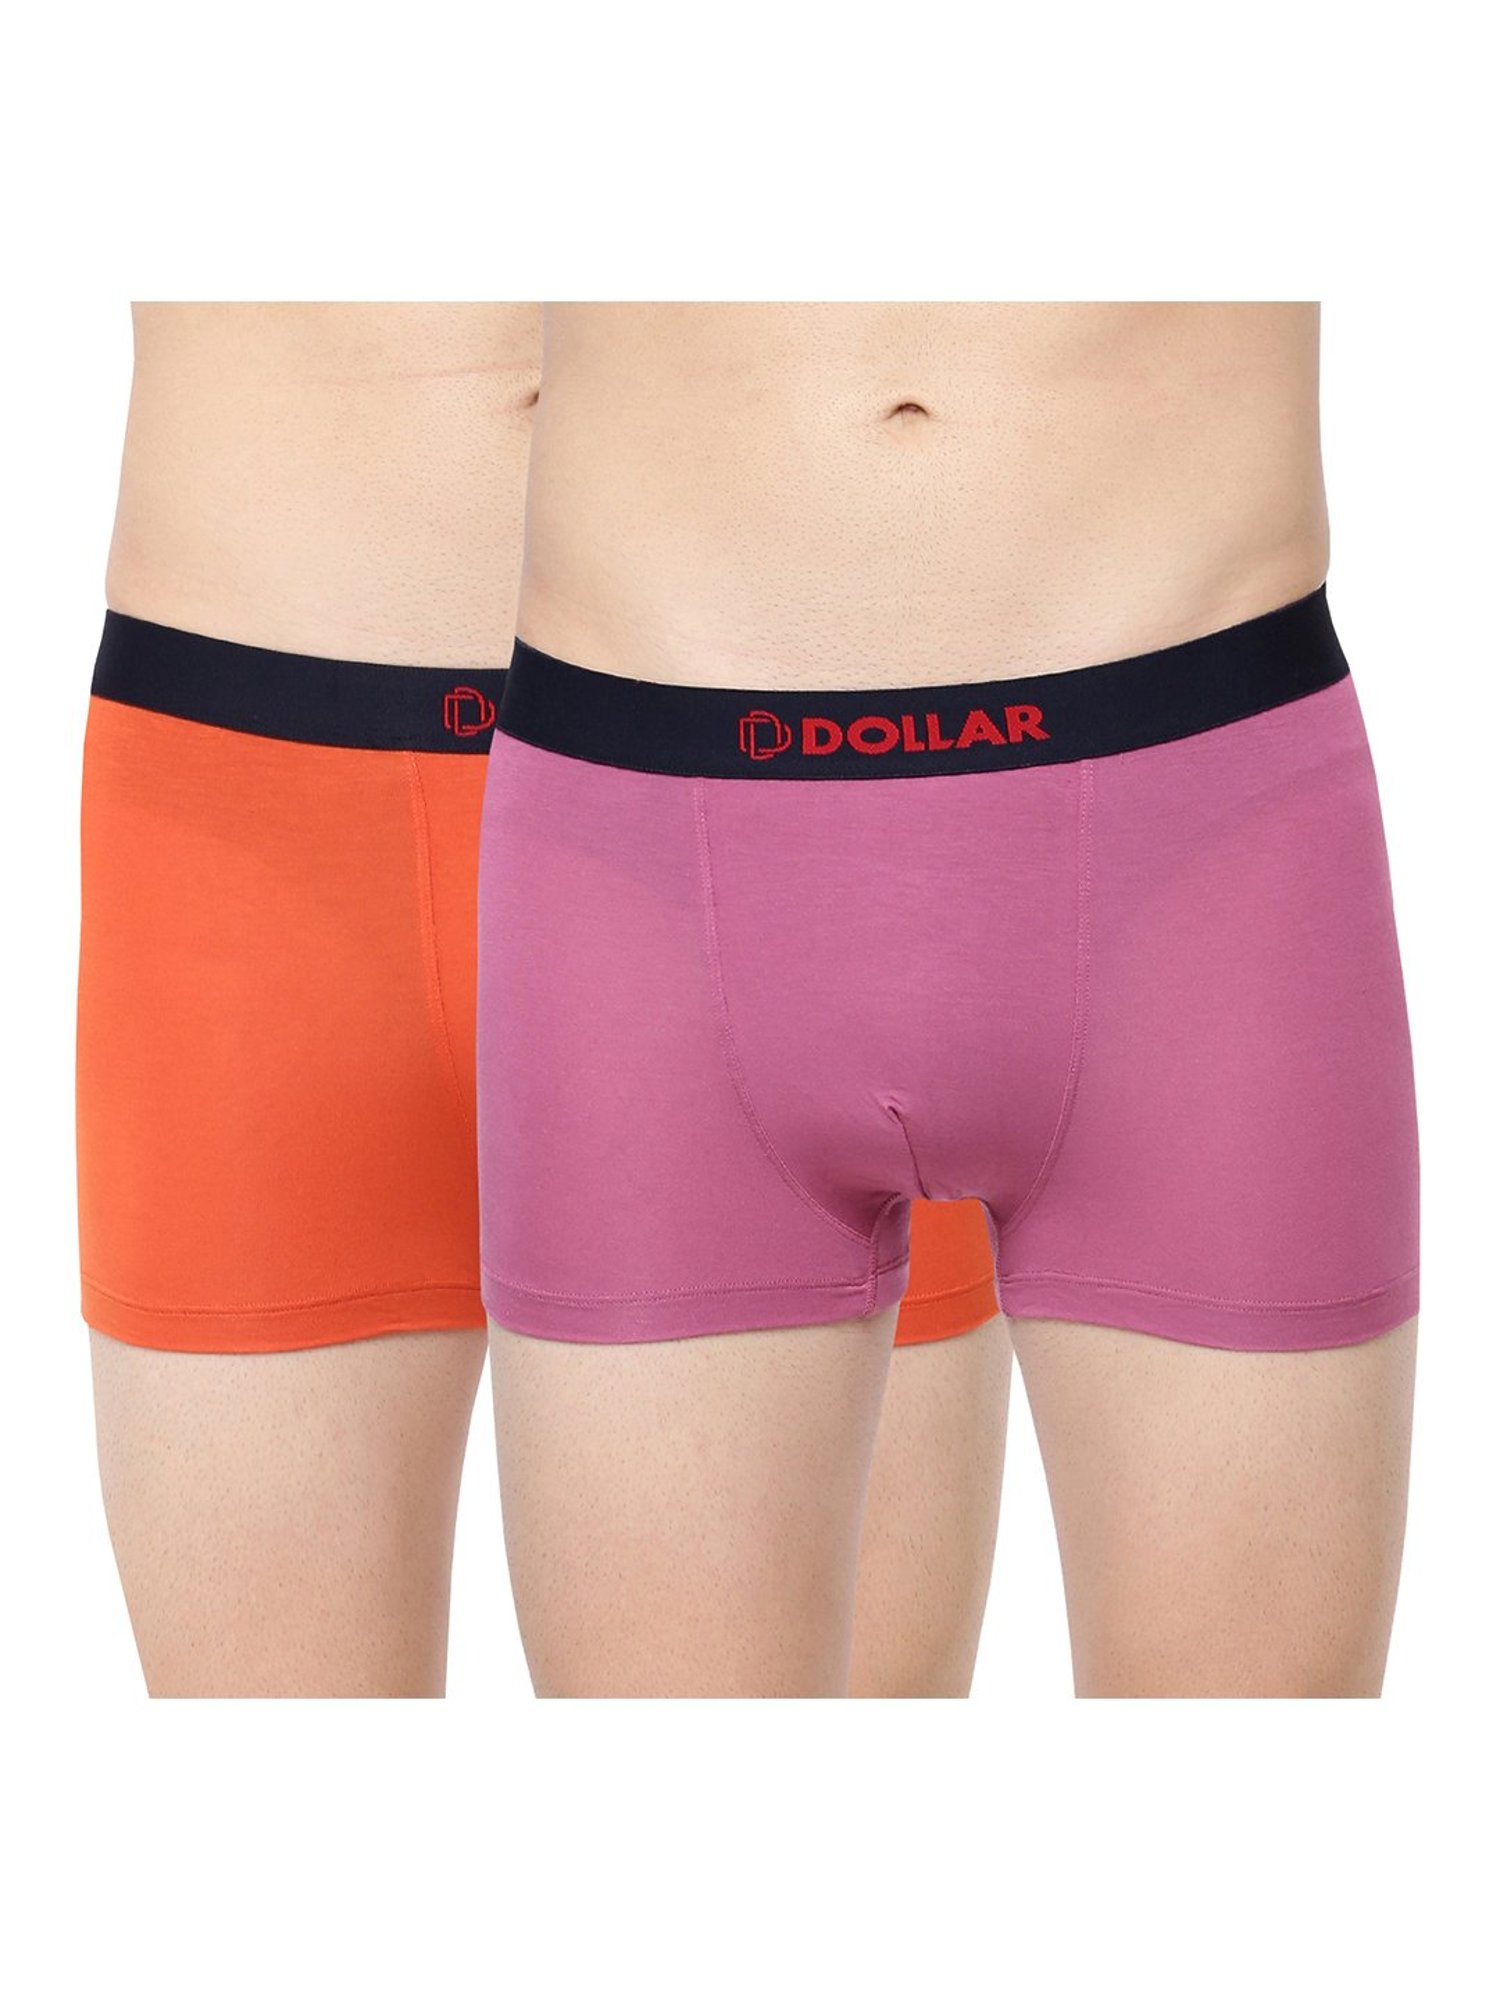 Buy Dollar Bigboss Assorted Trunks - Pack of 2 for Men's Online